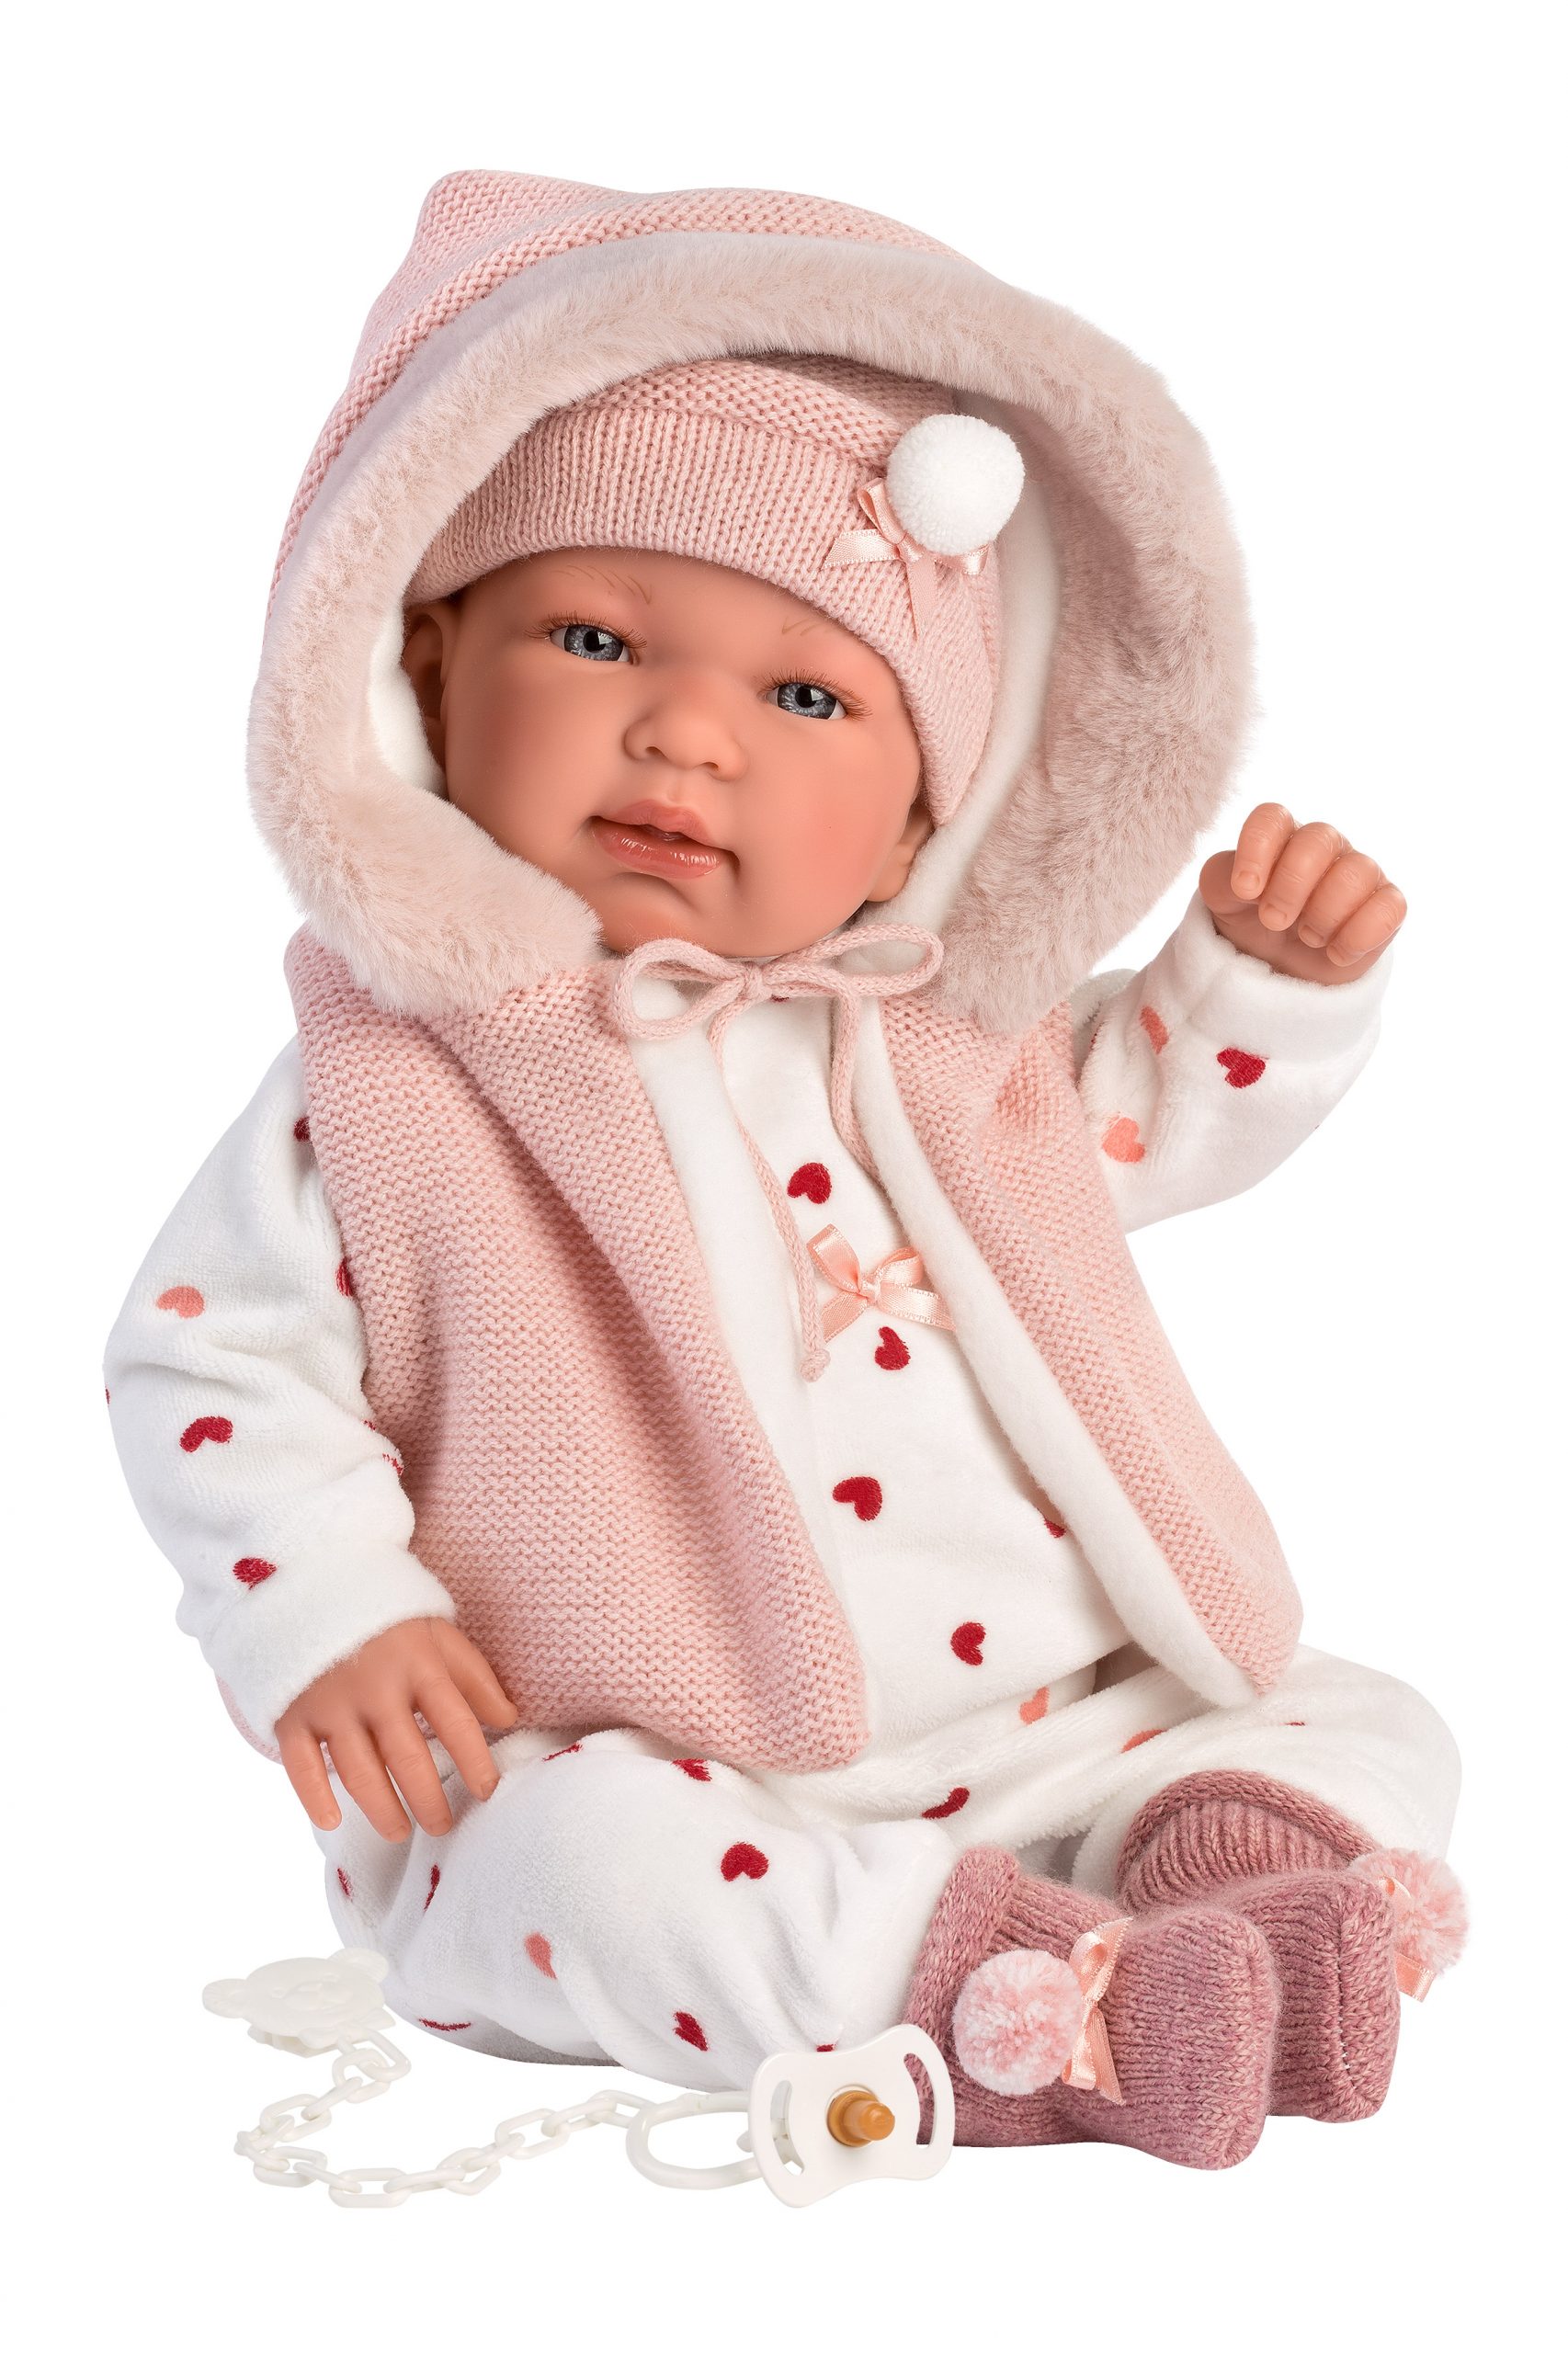 grond Spektakel Wonderbaarlijk L12a Llorens levensechte babypop softbody baby pop met geluid roze witte  kleding speen 44 cm – Selintoys